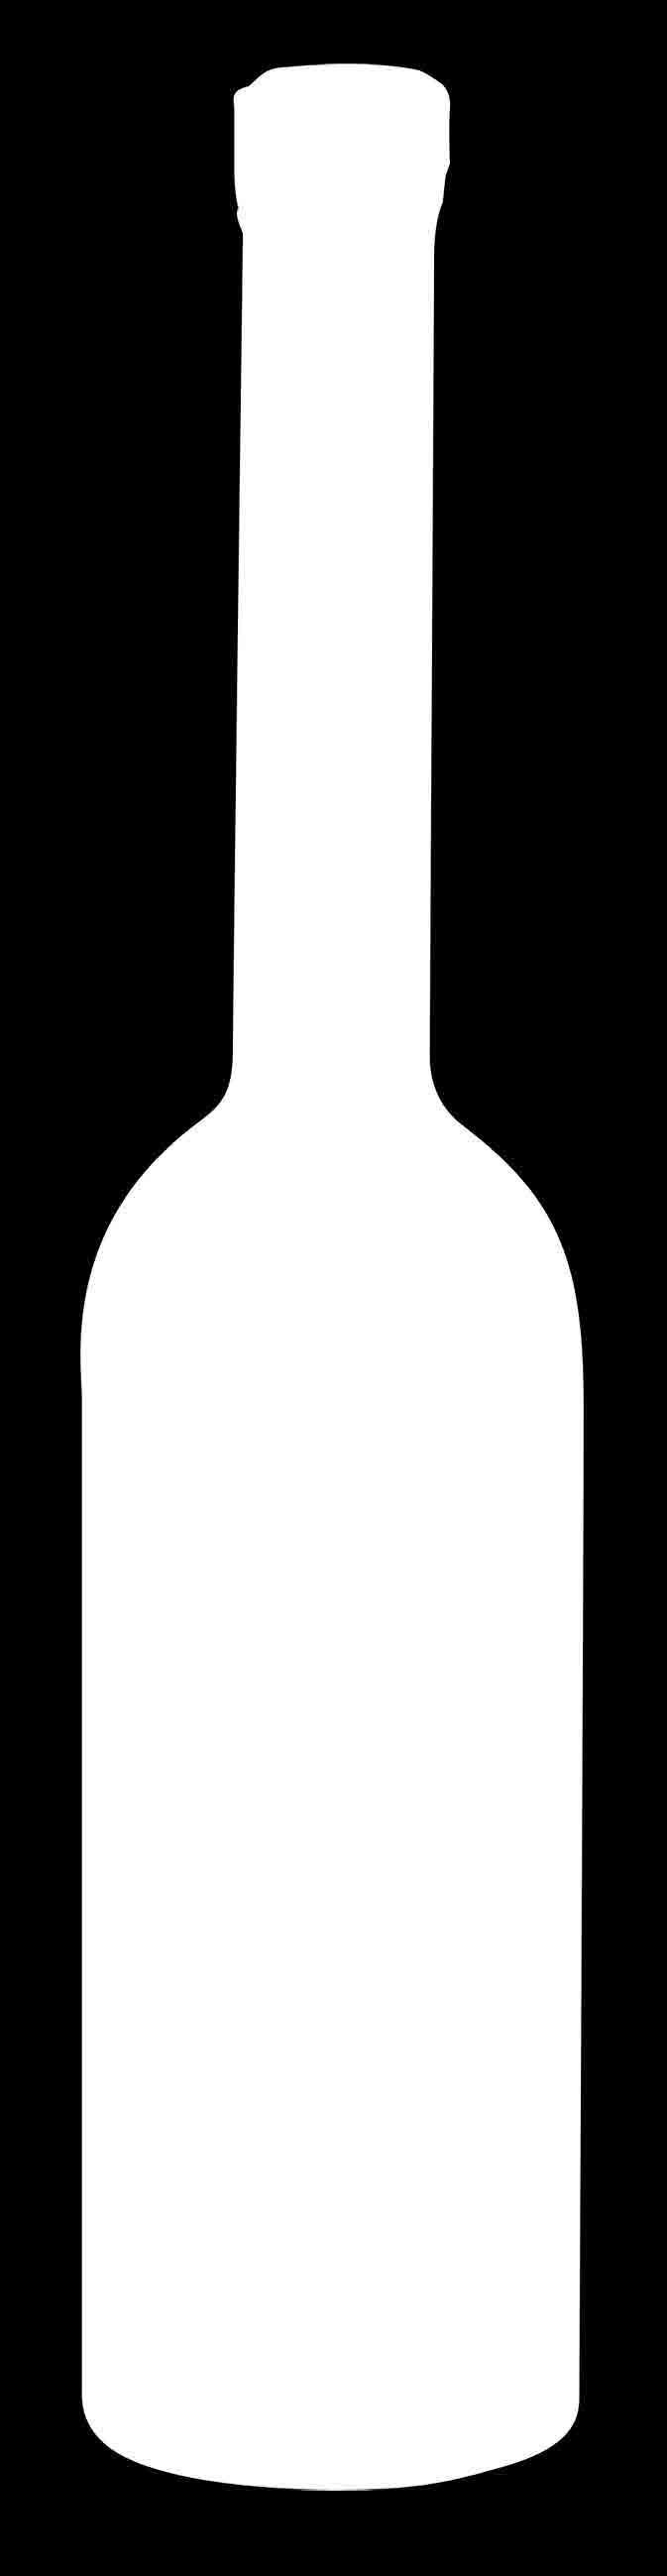 La Grappa Chardonnay è caratterizzata da una piacevole ed